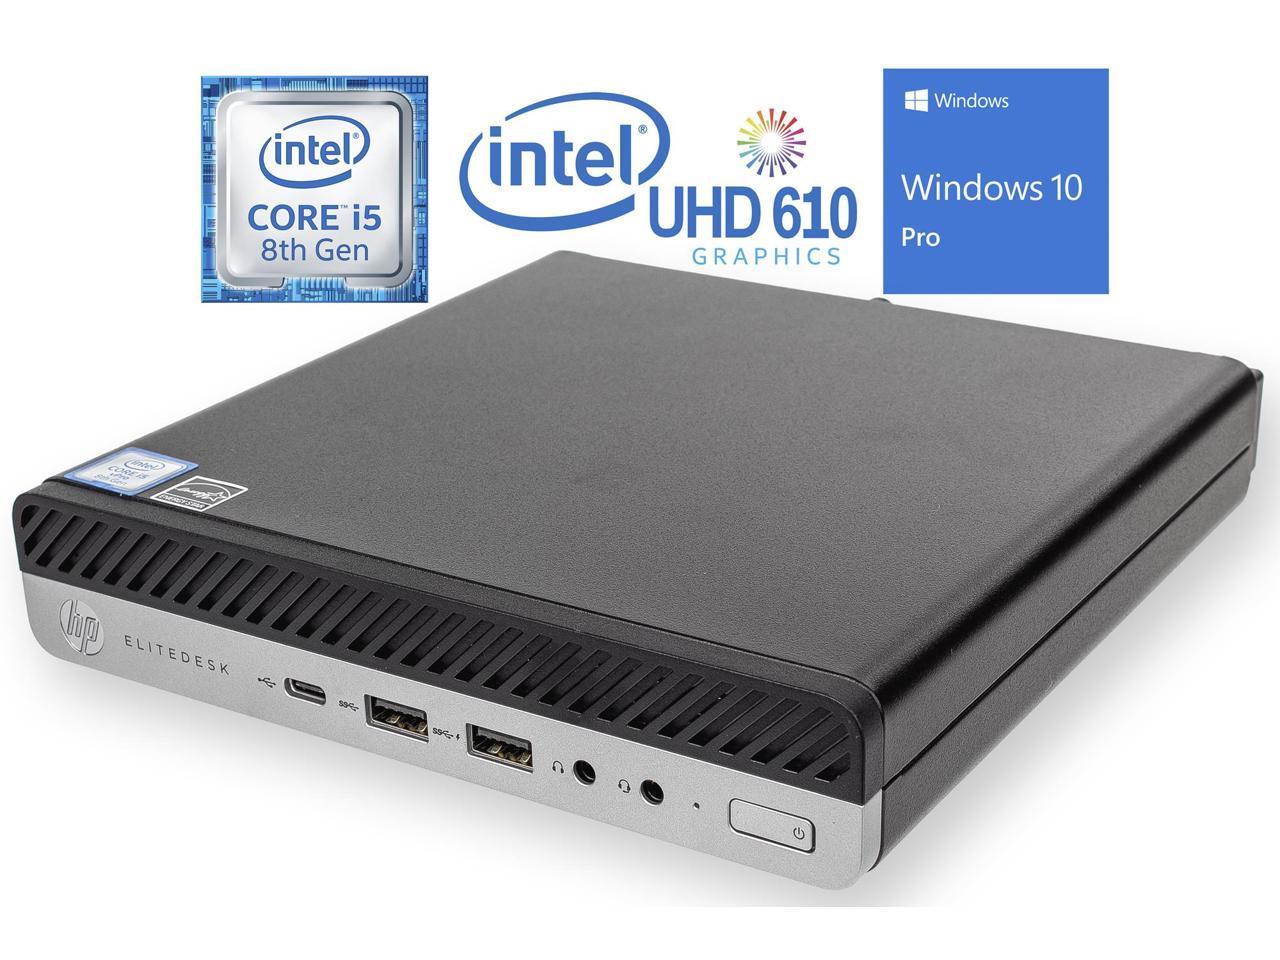 HP EliteDesk 800 G4 Mini PC, Intel Core i5-8500T Upto 3.5GHz, 8GB RAM, 256GB NVMe SSD, DisplayPort, HDMI, Wi-Fi, Bluetooth, Windows 10 Pro